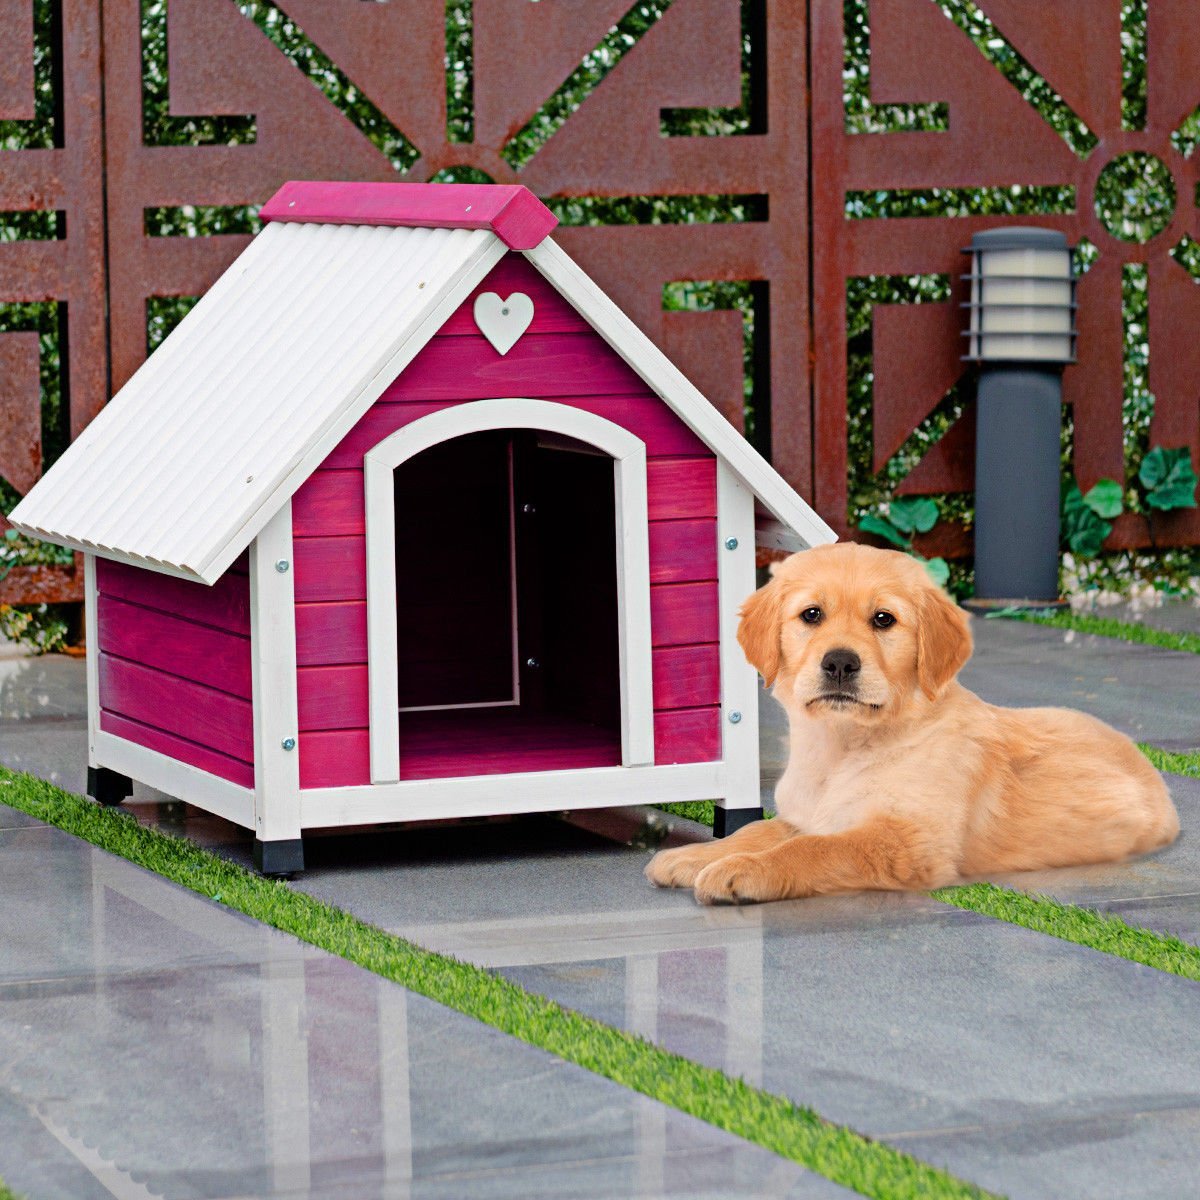 Новый dog house. Собачья будка. Домик для собачки. Красивые домики для собак. Декоративная будка для собаки.